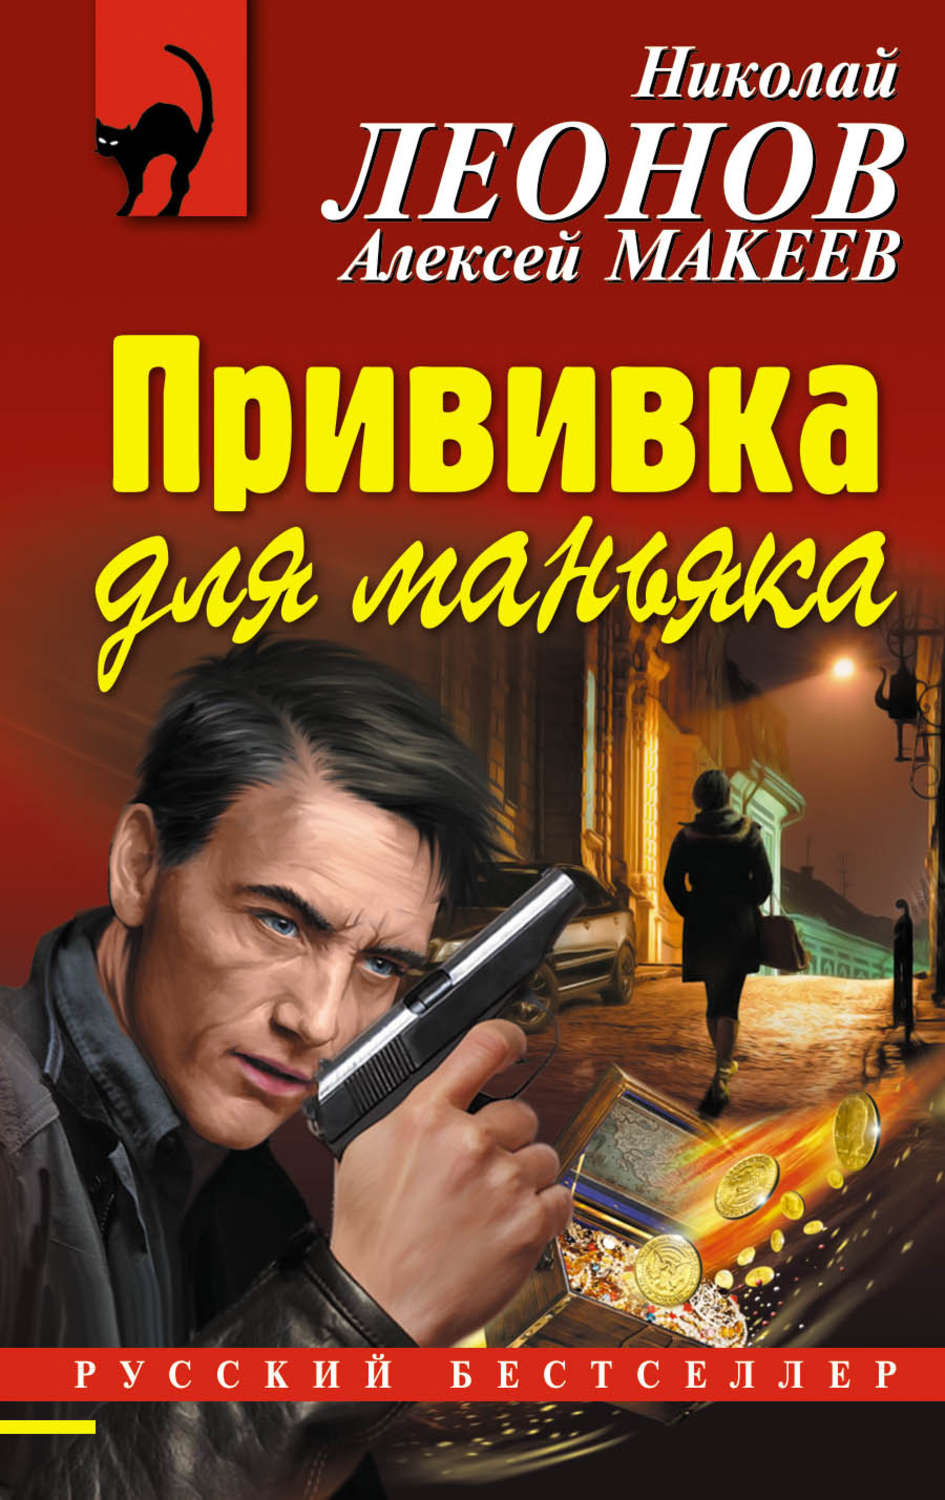 Детектив про писателя. Детективы книги. Российские детективы книги. Русские детективы книги авторы. Интересные книги детективы.